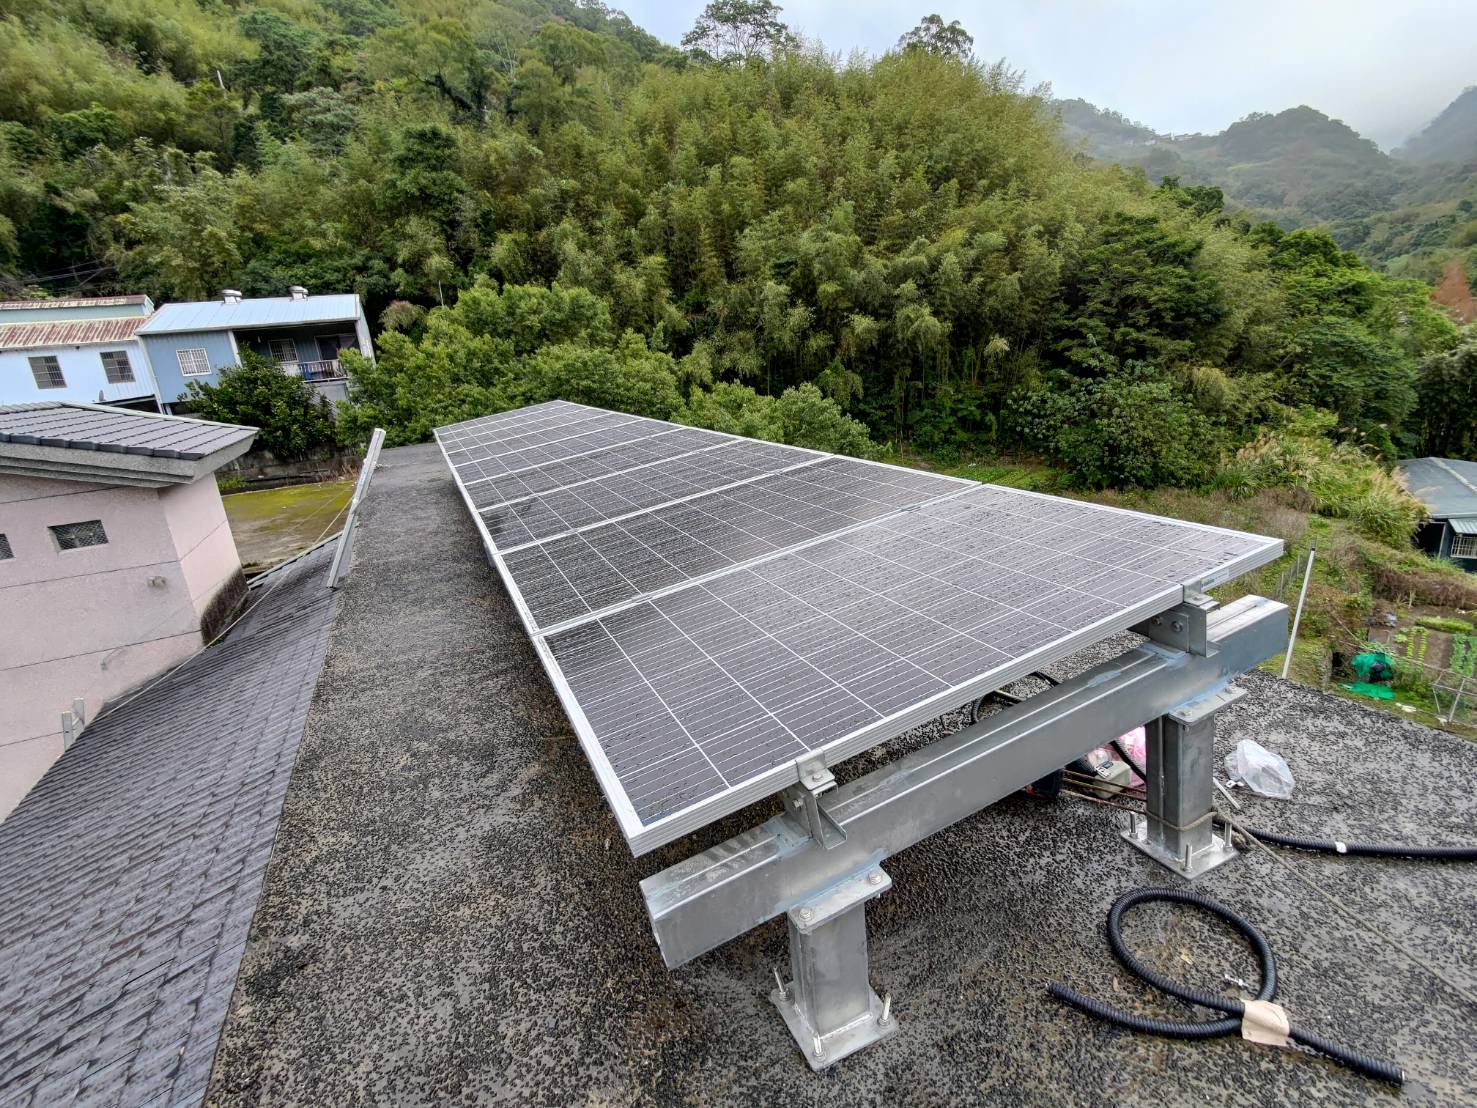 偏鄉微電網示範系統太陽能板。照片工學院提供。